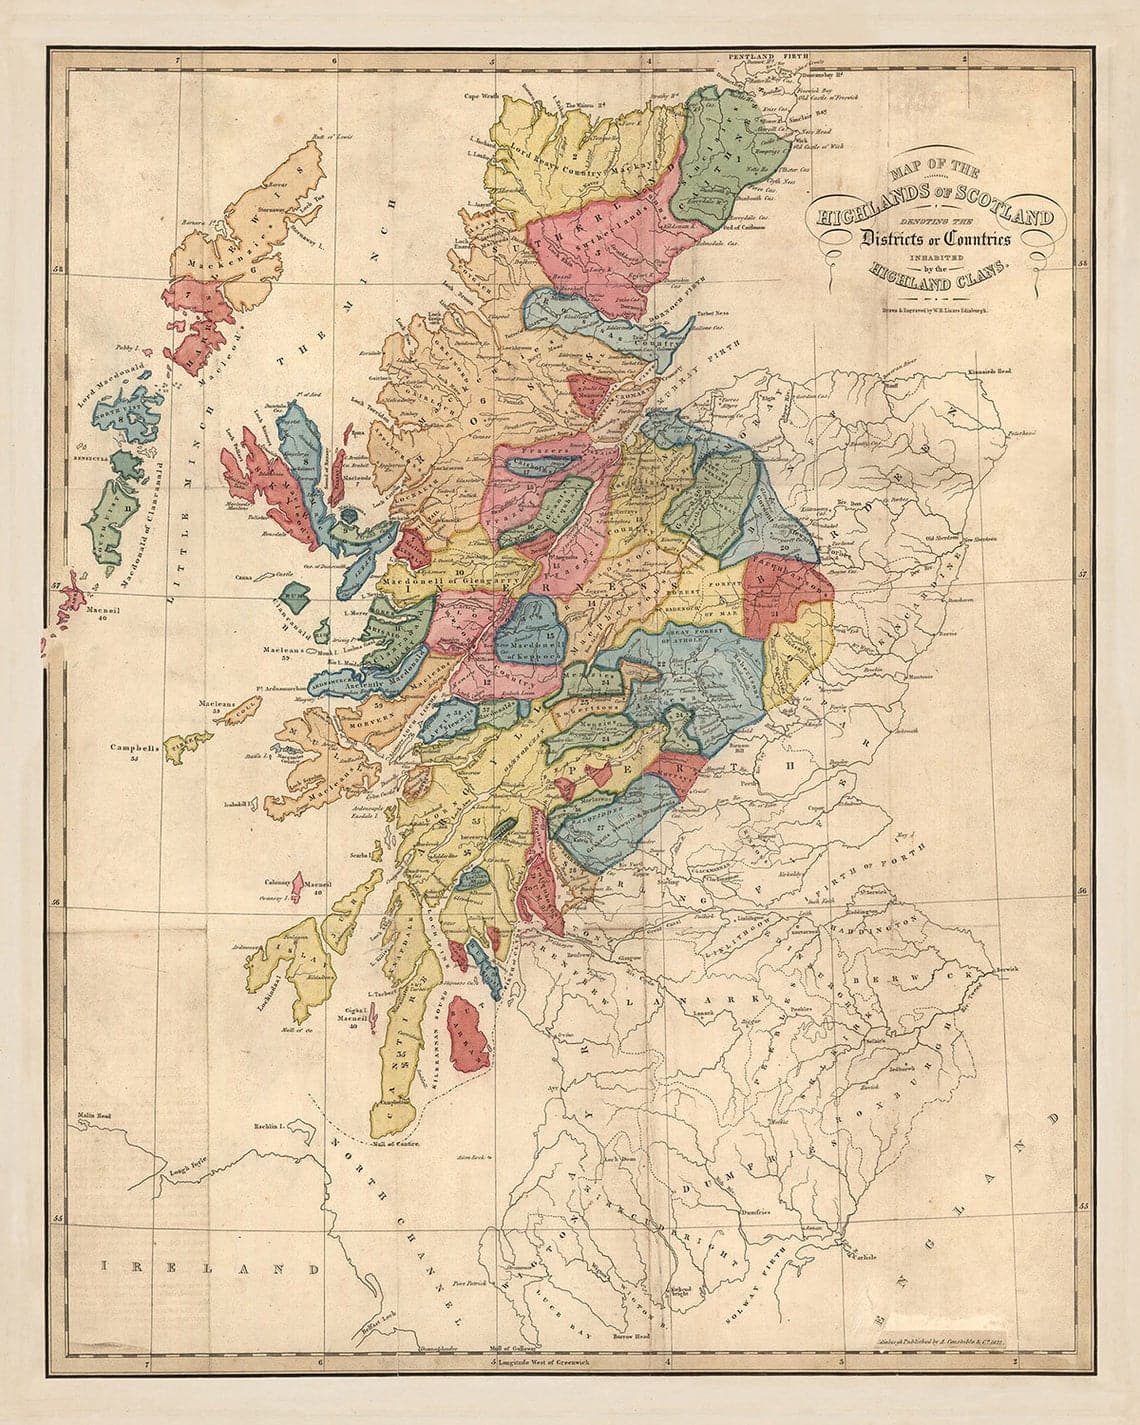 Carte des clans d'Écosse - Carte couleur rare des Highlands d'Écosse par WH Lizars, 1822